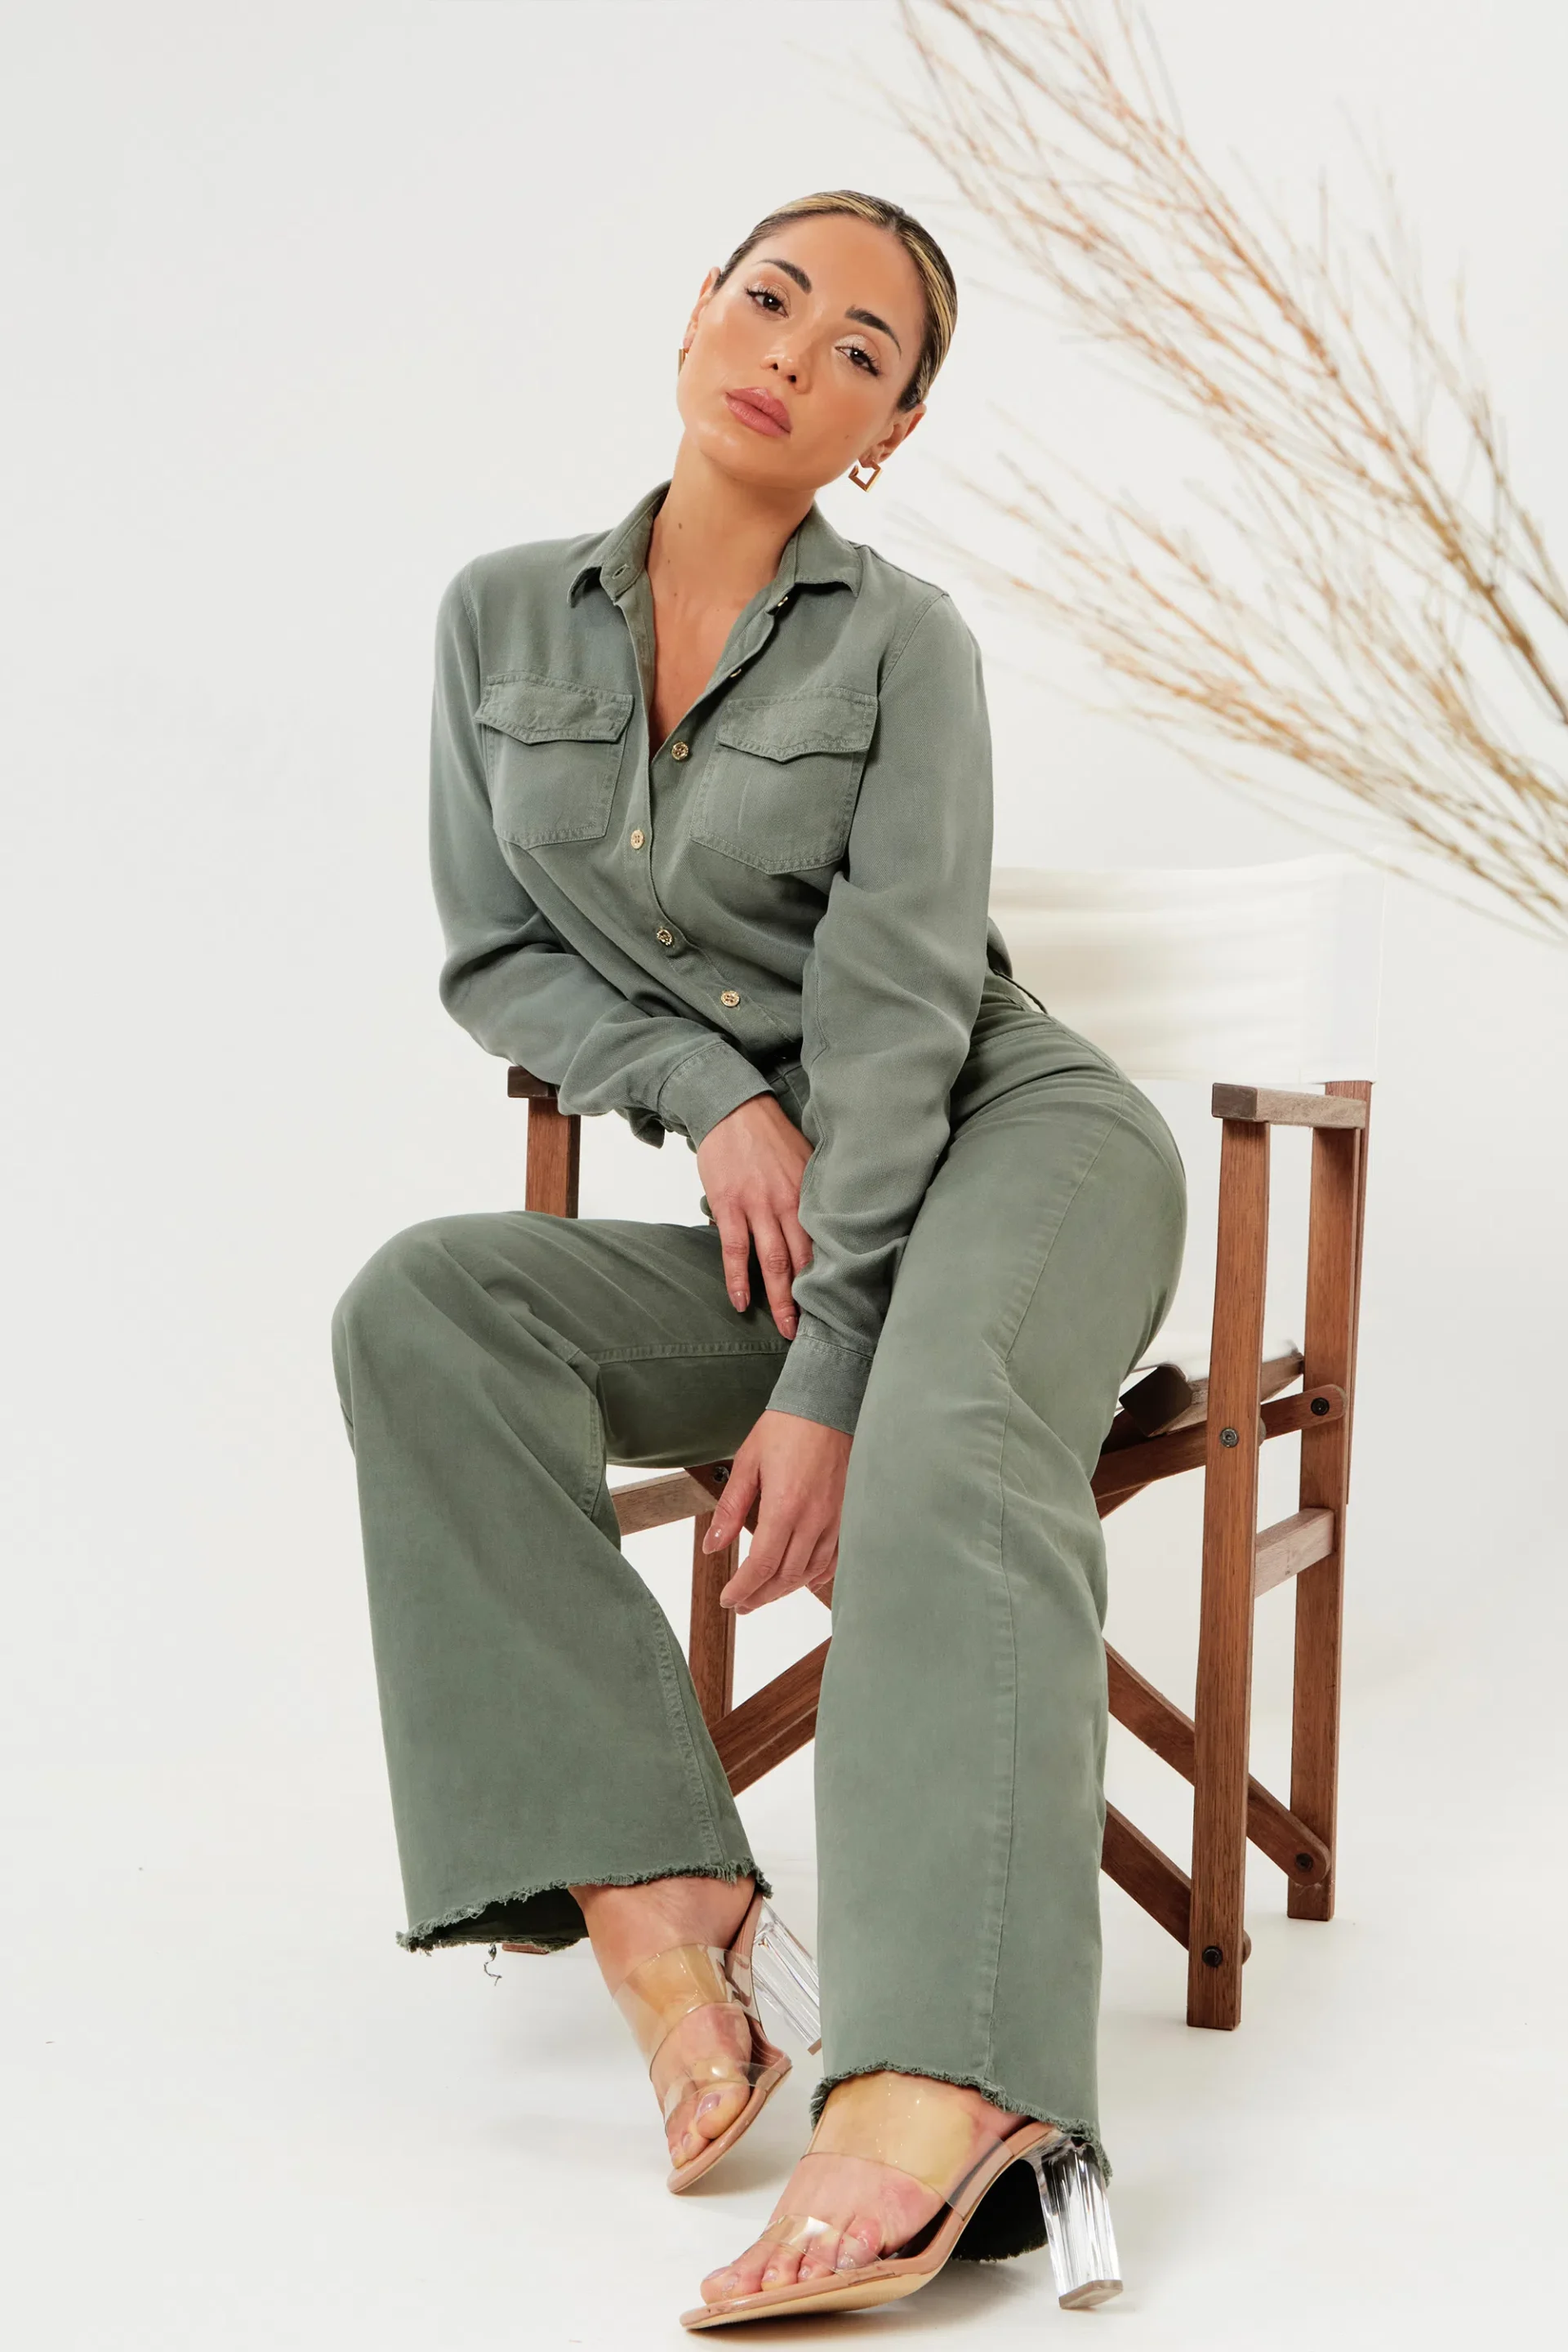 Opte por um look monocromático com peças despojadas como a Camisa Térmica Oversized Verde combinada com a Calça Jeans Modeladora Wide Leg Verde. 